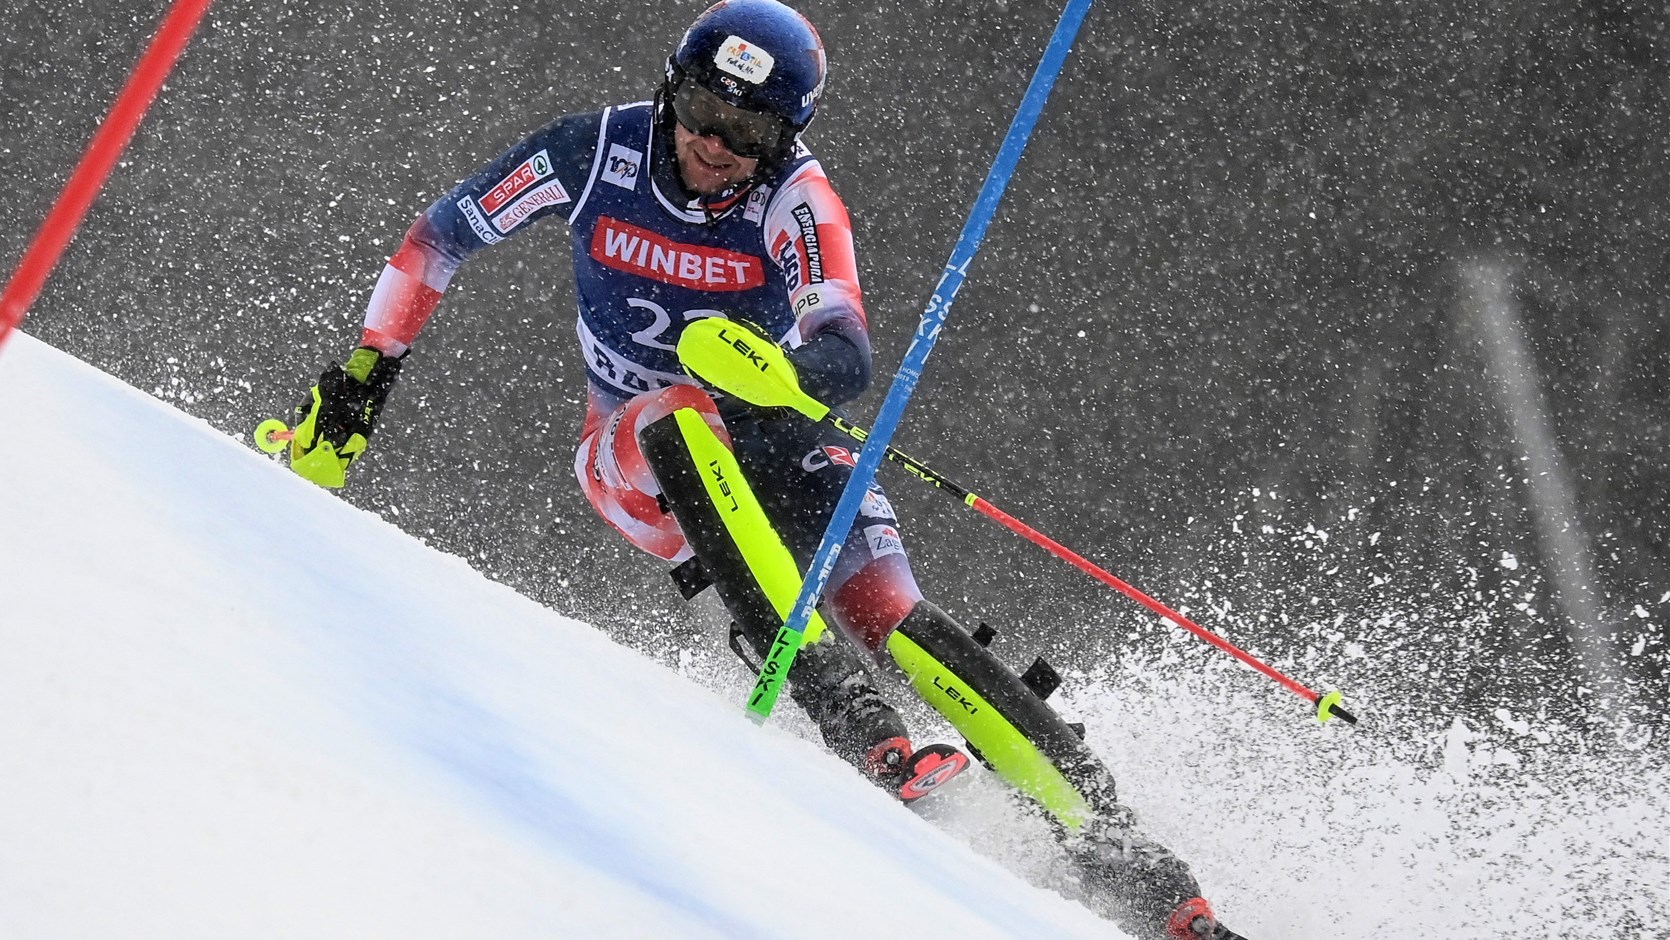 Otkazan slalom u Banskom, u trenutku prekida Kolega je bio 13.